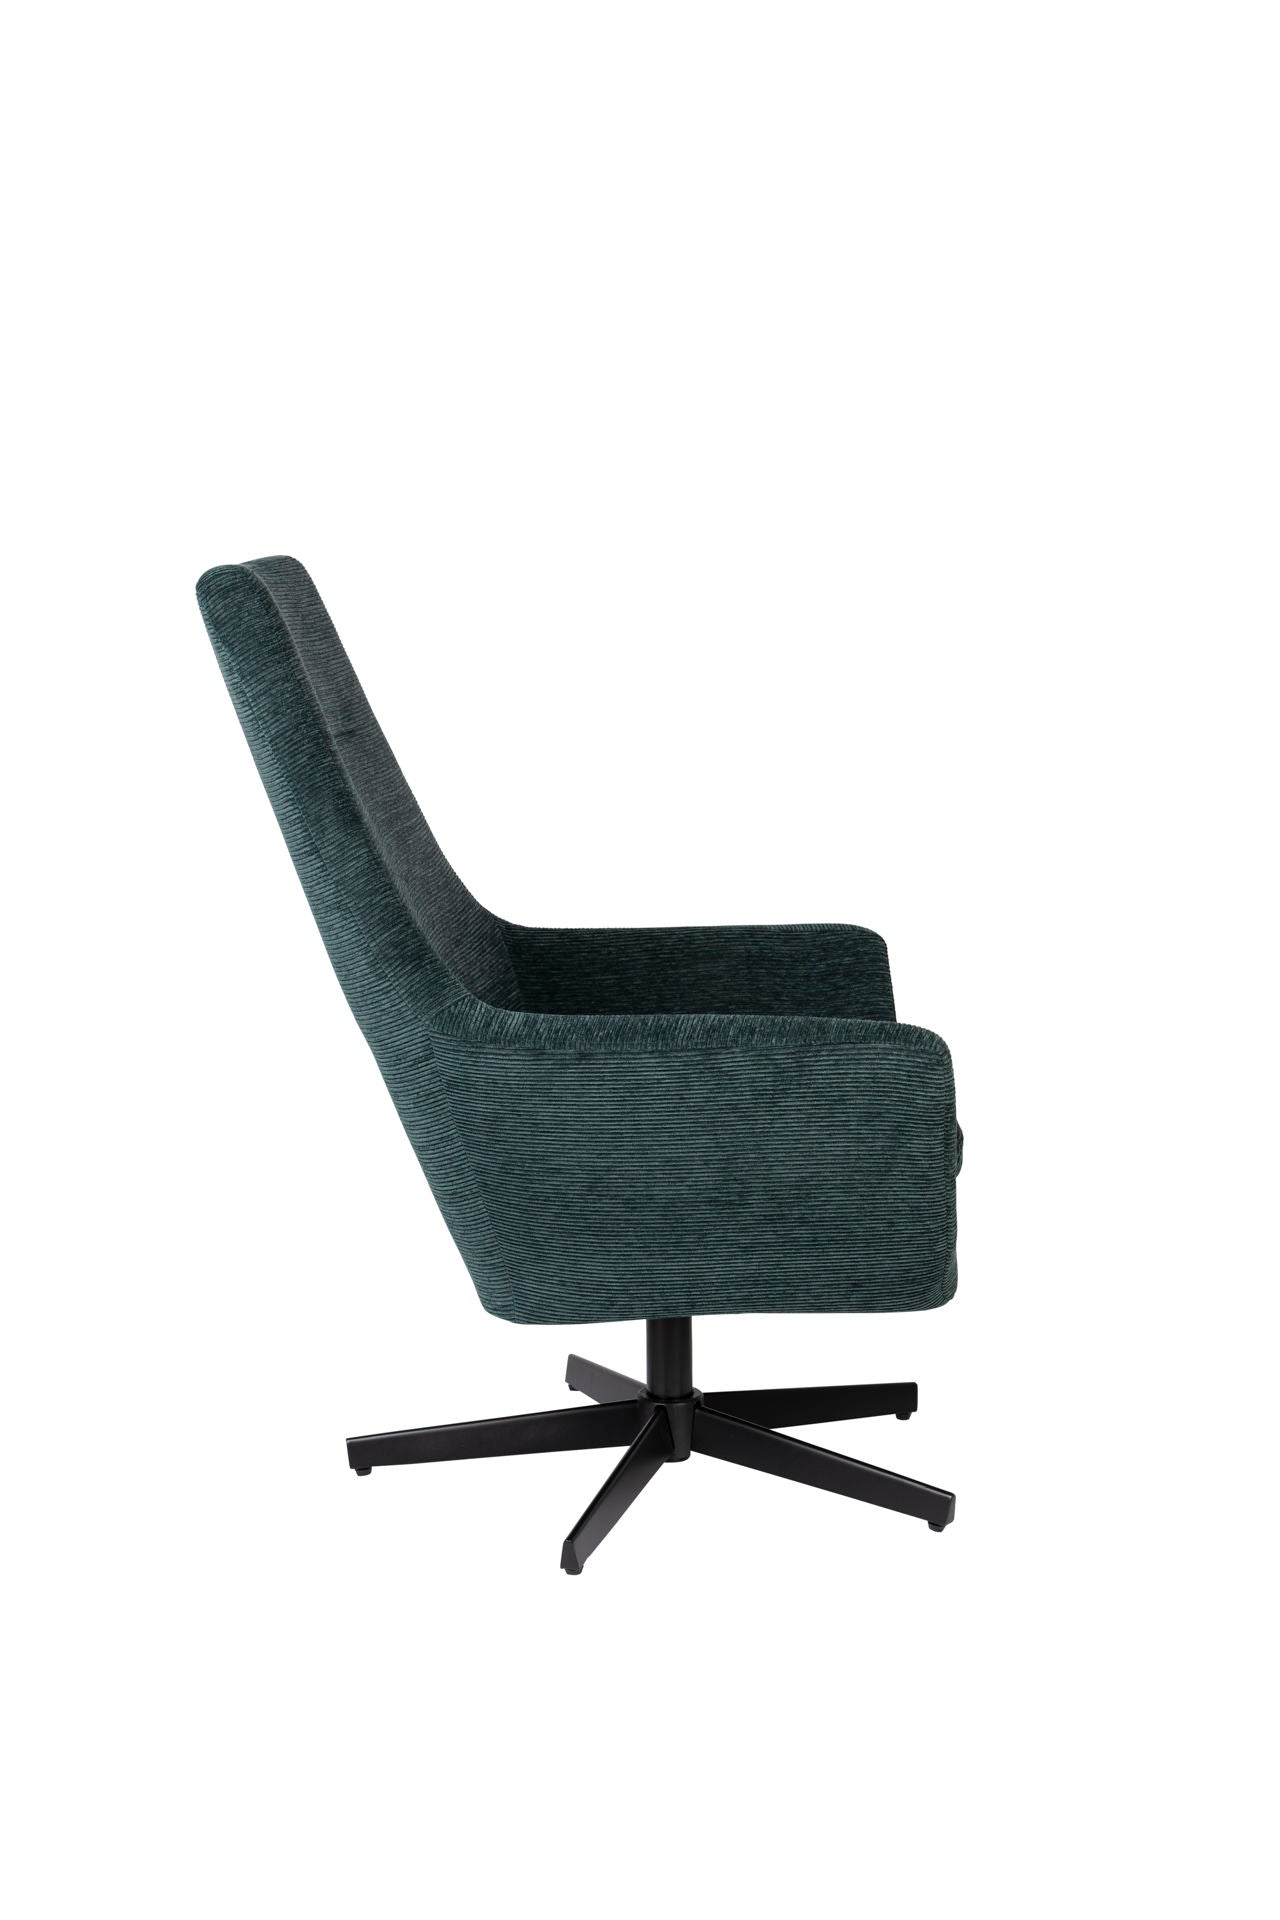 Nancy's Claiborne Lounge Chair - Industriel - Vert - Polyester, Contreplaqué, Fer - 79 cm x 76 cm x 98 cm